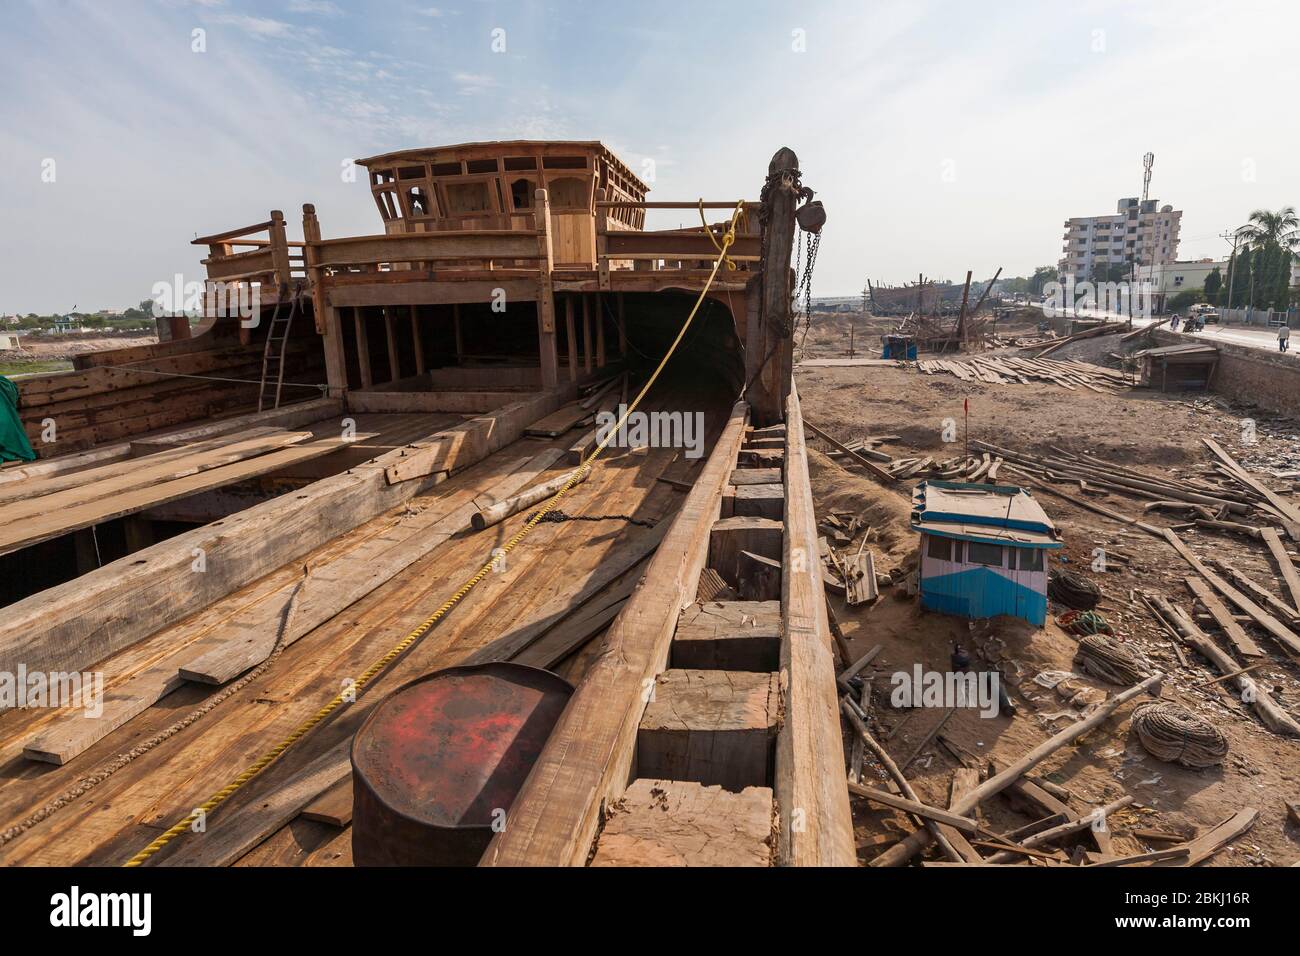 Inde, Etat du Gujarat, Mandvi, chantiers navals, dhow en construction Banque D'Images